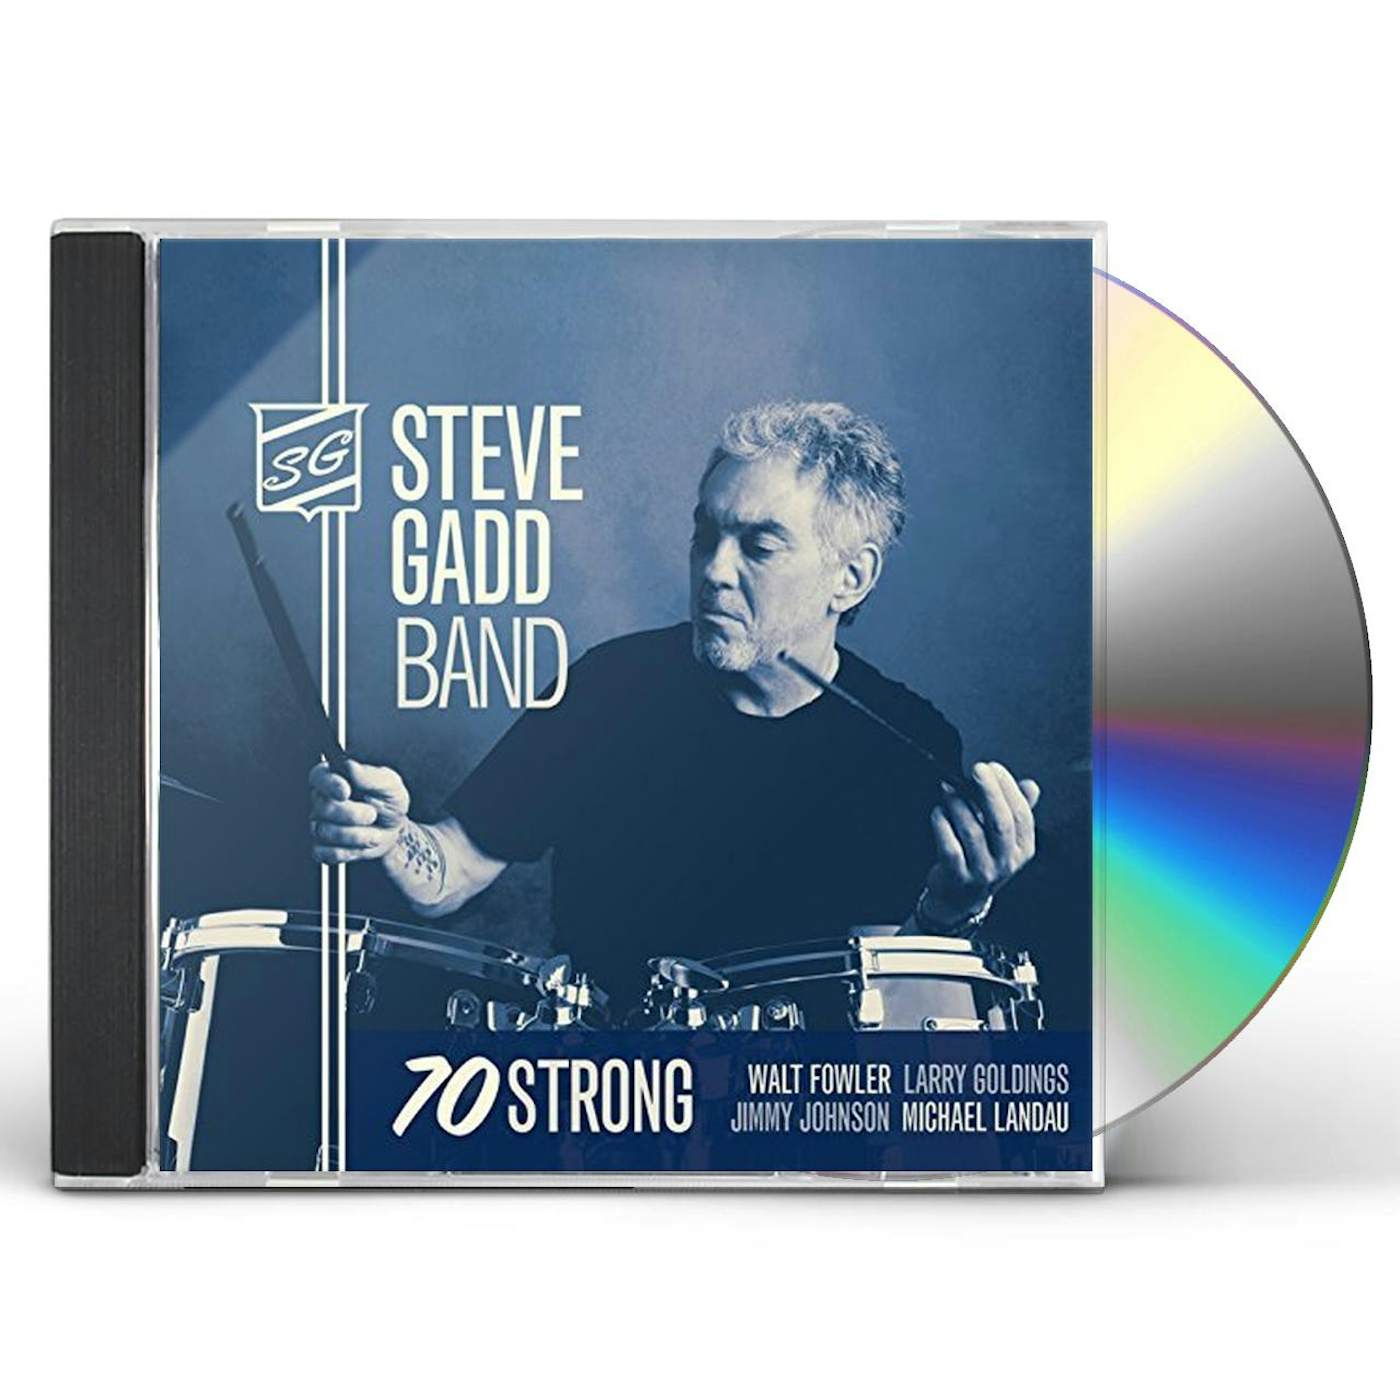 Steve Gadd 70 STRONG CD